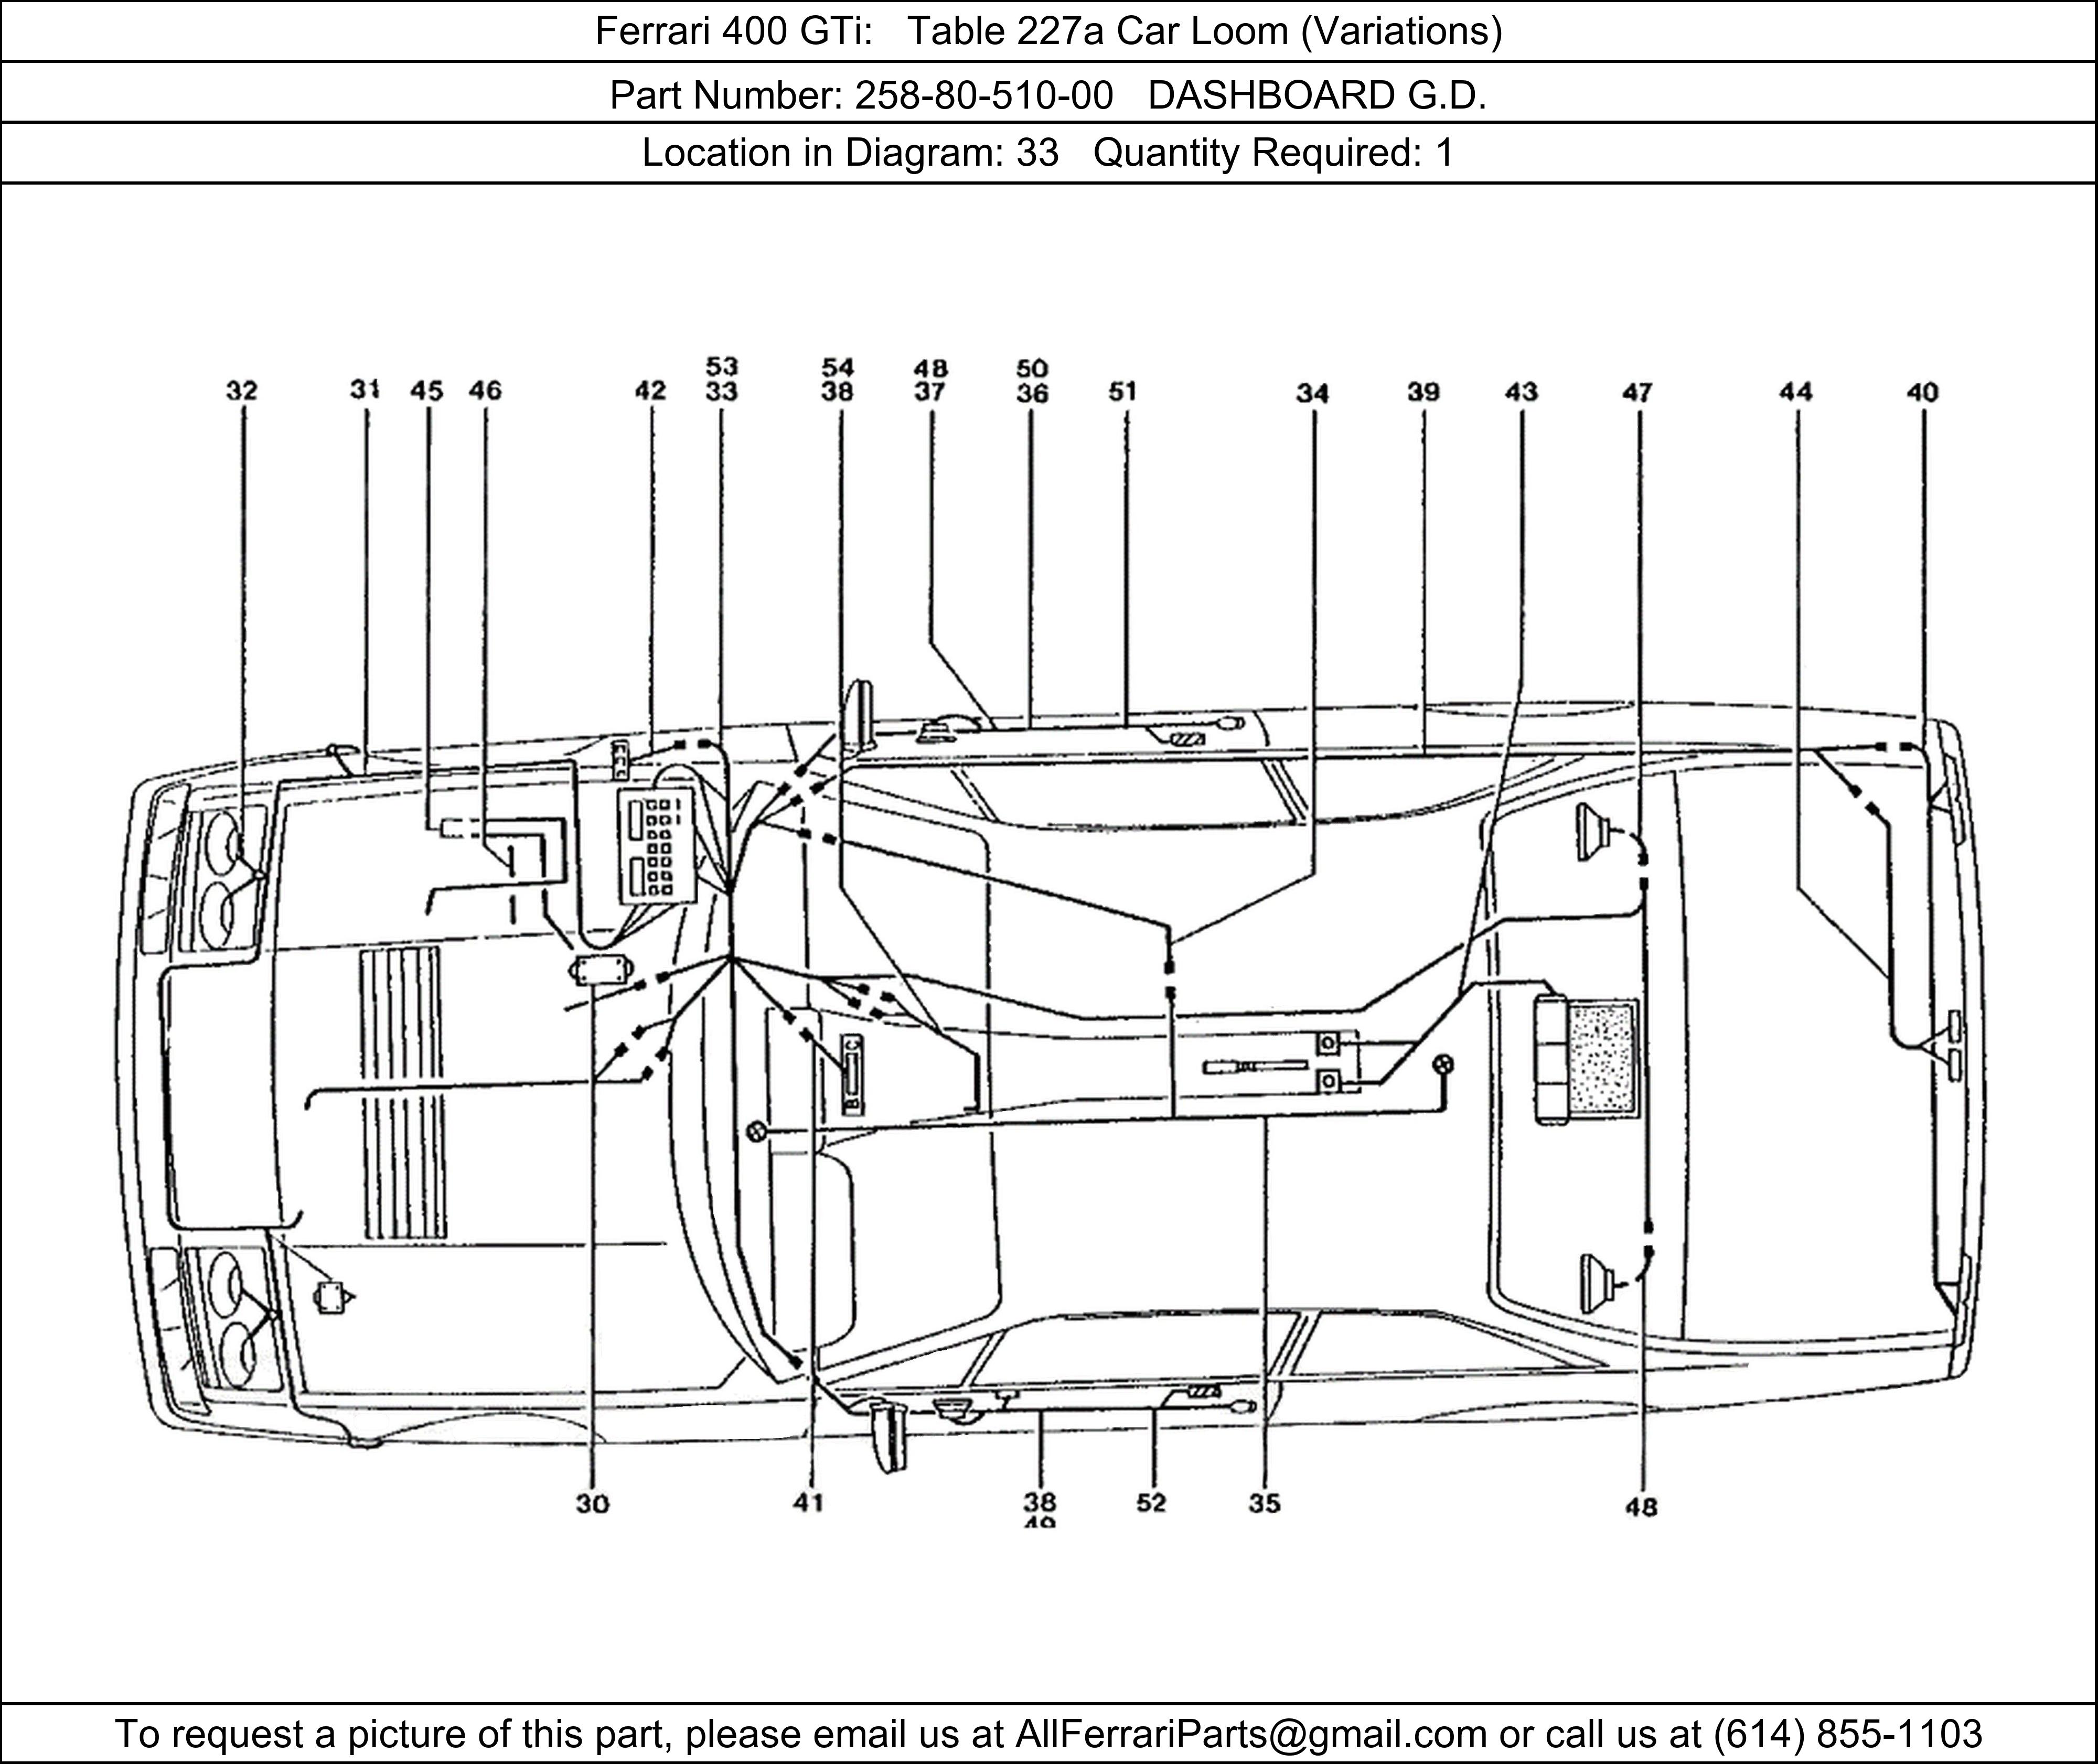 Ferrari Part 258-80-510-00